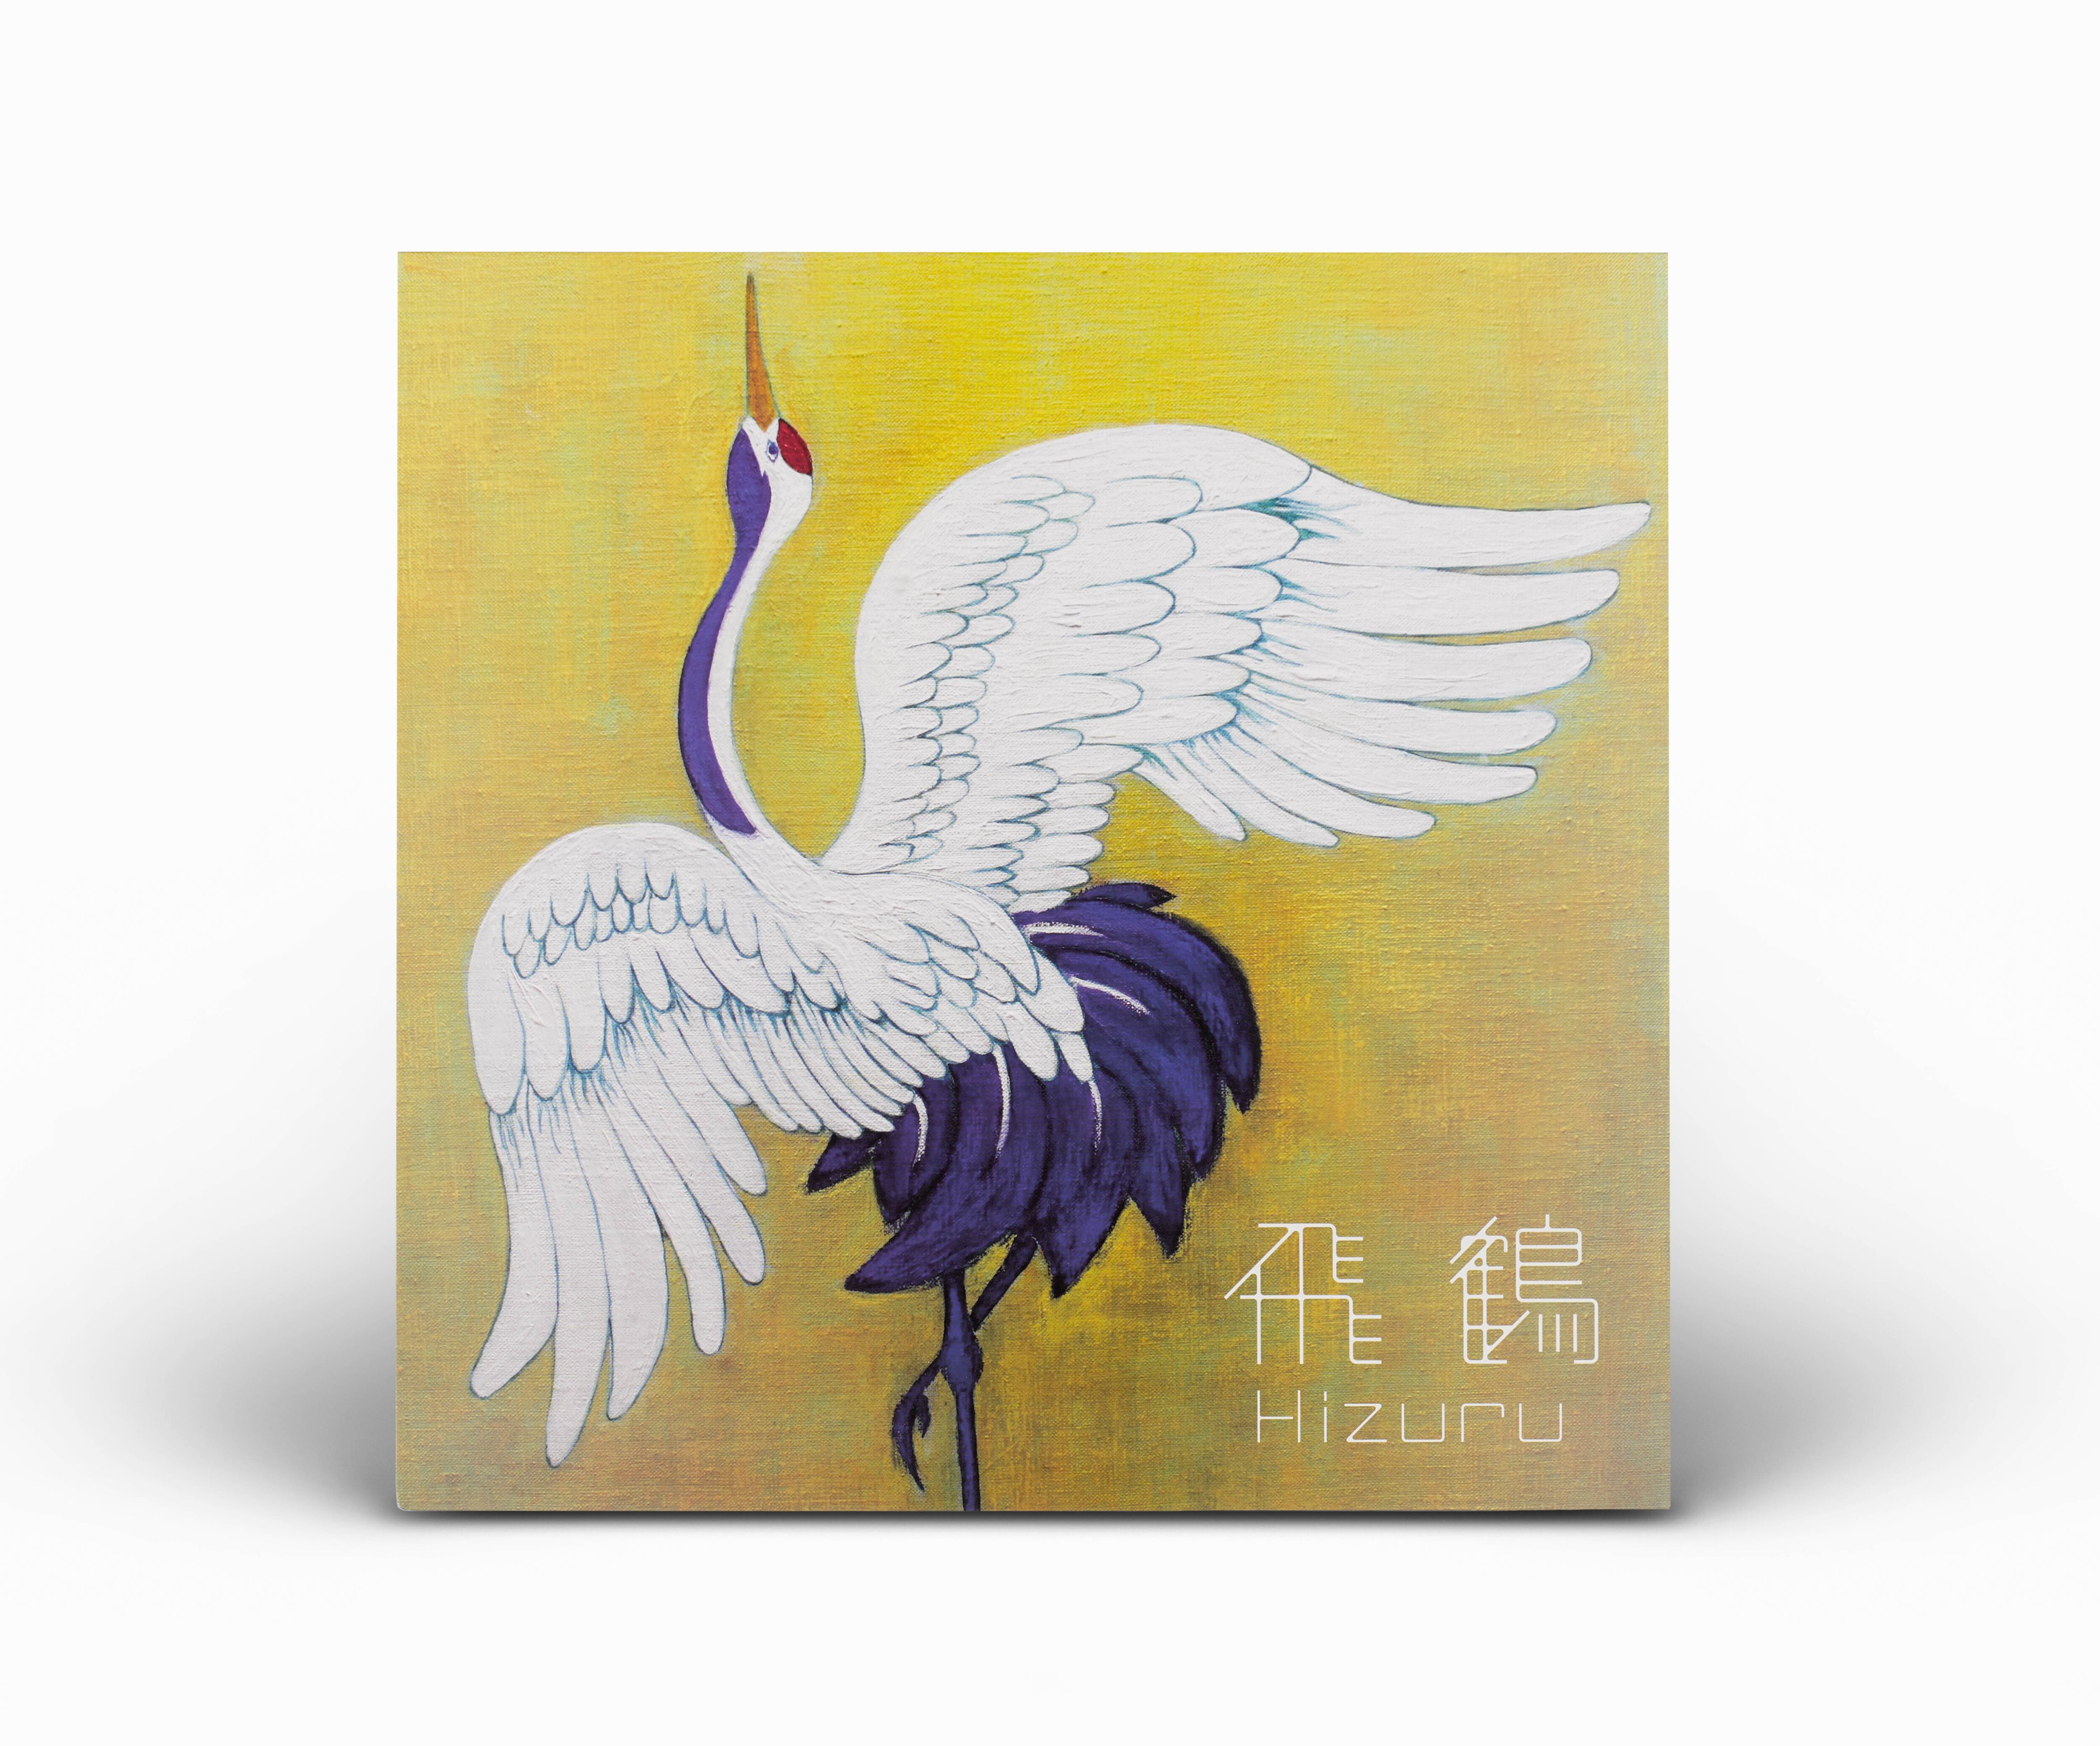 『飛鶴 / Hizuru』(2nd Press Vinyl)